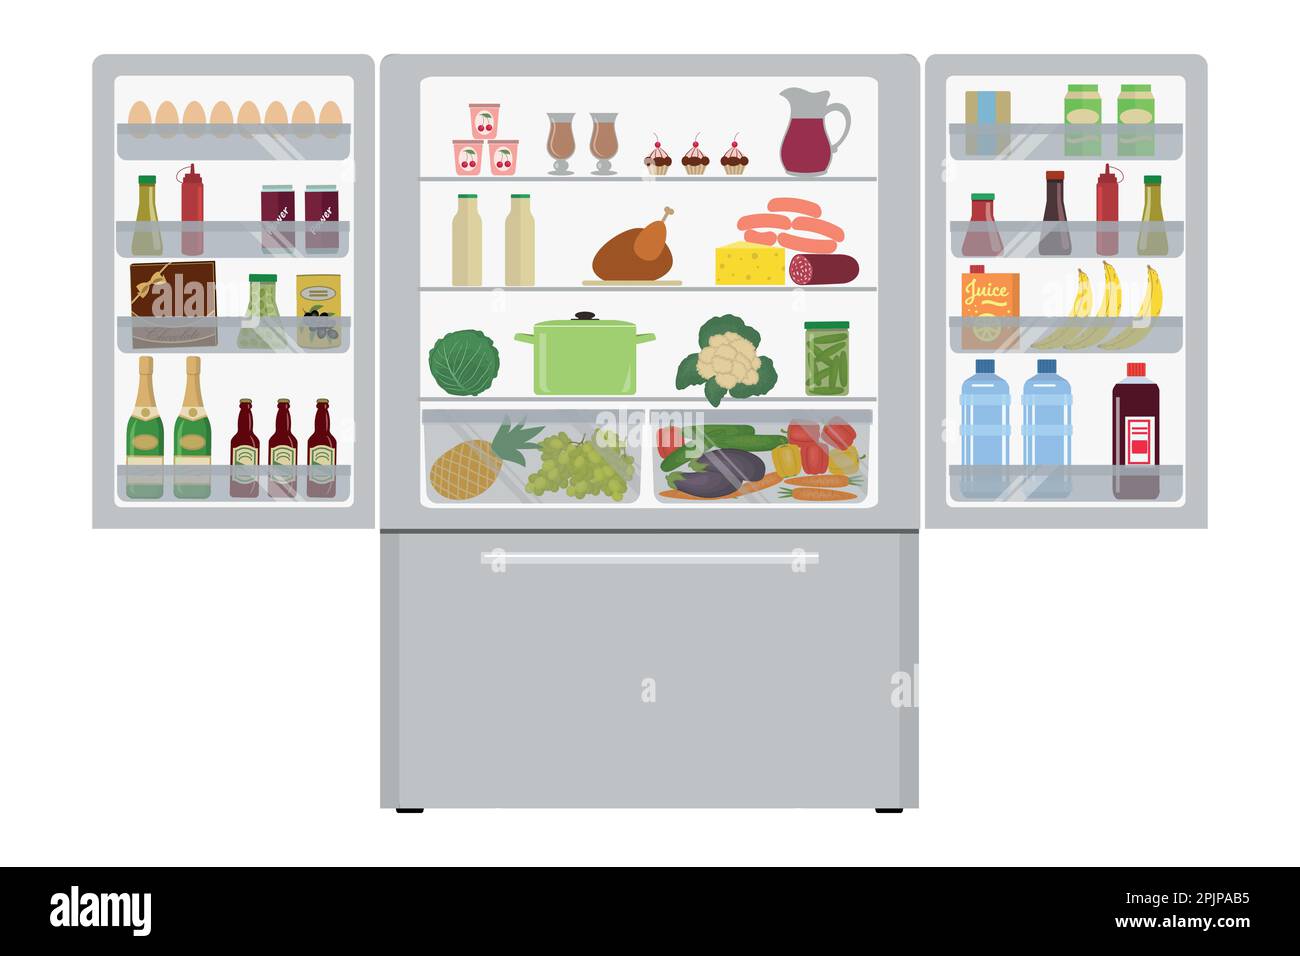 Kühlschrank mit offenen Türen, voller Essen. Es gibt eine Champagnerflasche, eine Schachtel Pralinen, Saft, Wurst, Bananen, Eier, Ketchup und andere Lebensmittel Stock Vektor